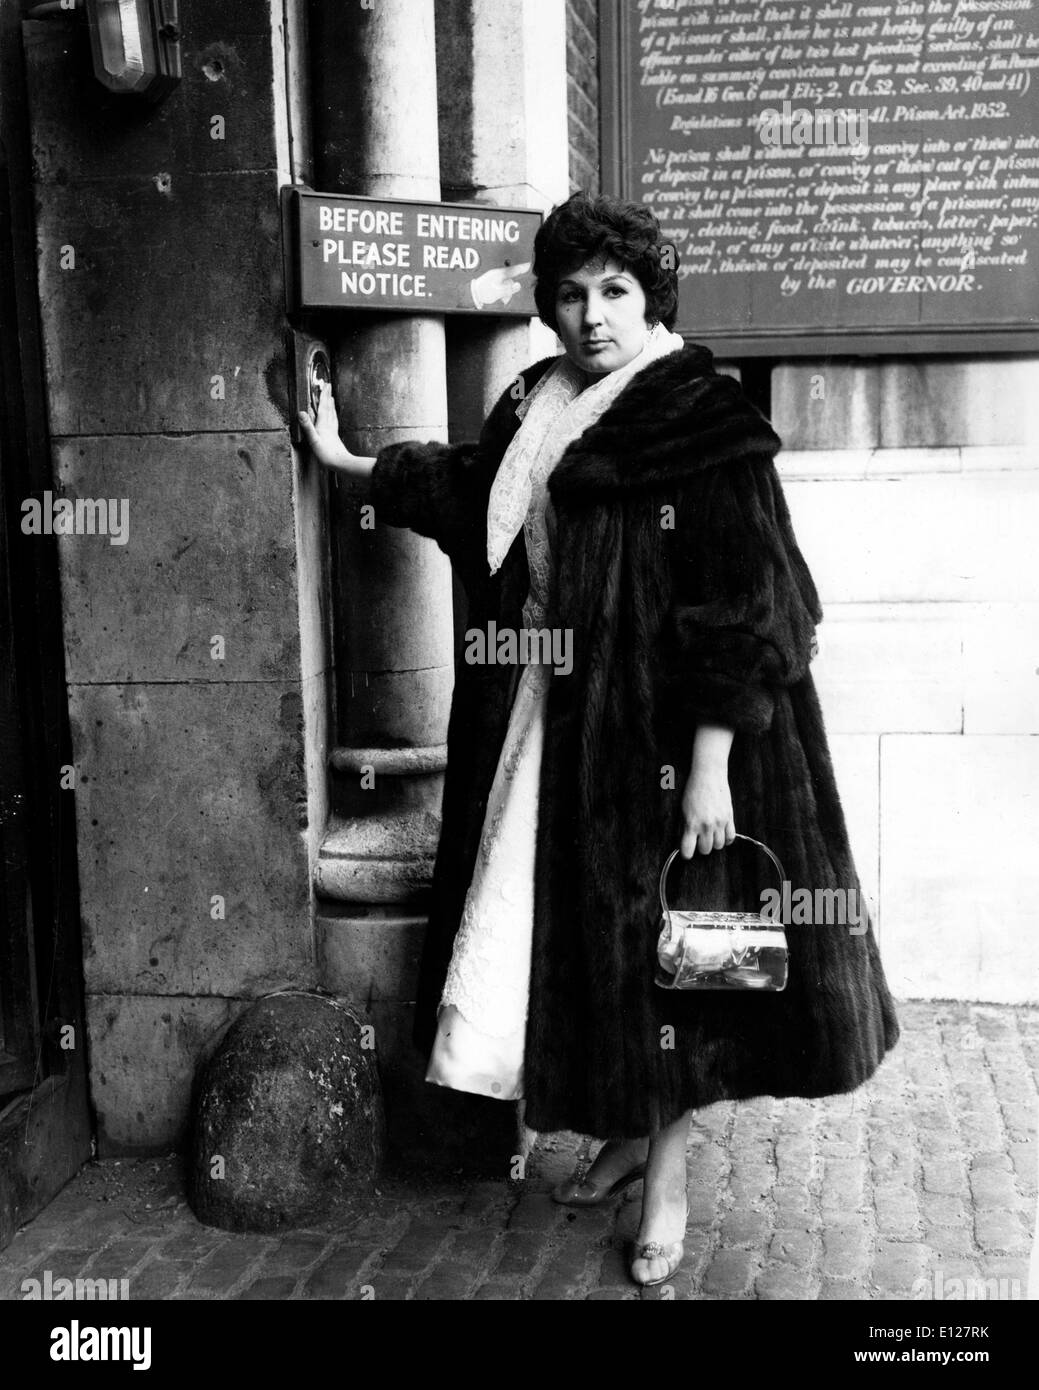 Apr 01, 2009 - Londra, Inghilterra, Regno Unito - ALMA COGAN (19 maggio 1932 Ð 26 ottobre 1966) era un cantante inglese di pop tradizionale musica negli anni cinquanta e sessanta. Dubbed ''La ragazza con la risata nella sua voce'', era il più pagato femmina britannica animatore della sua epoca. In tutta la metà degli anni cinquanta del secolo scorso, era il modo più coerente di successo cantante femminile nel Regno Unito. (Credito Immagine: KEYSTONE Pictures USA/ZUMAPRESS.com) Foto Stock